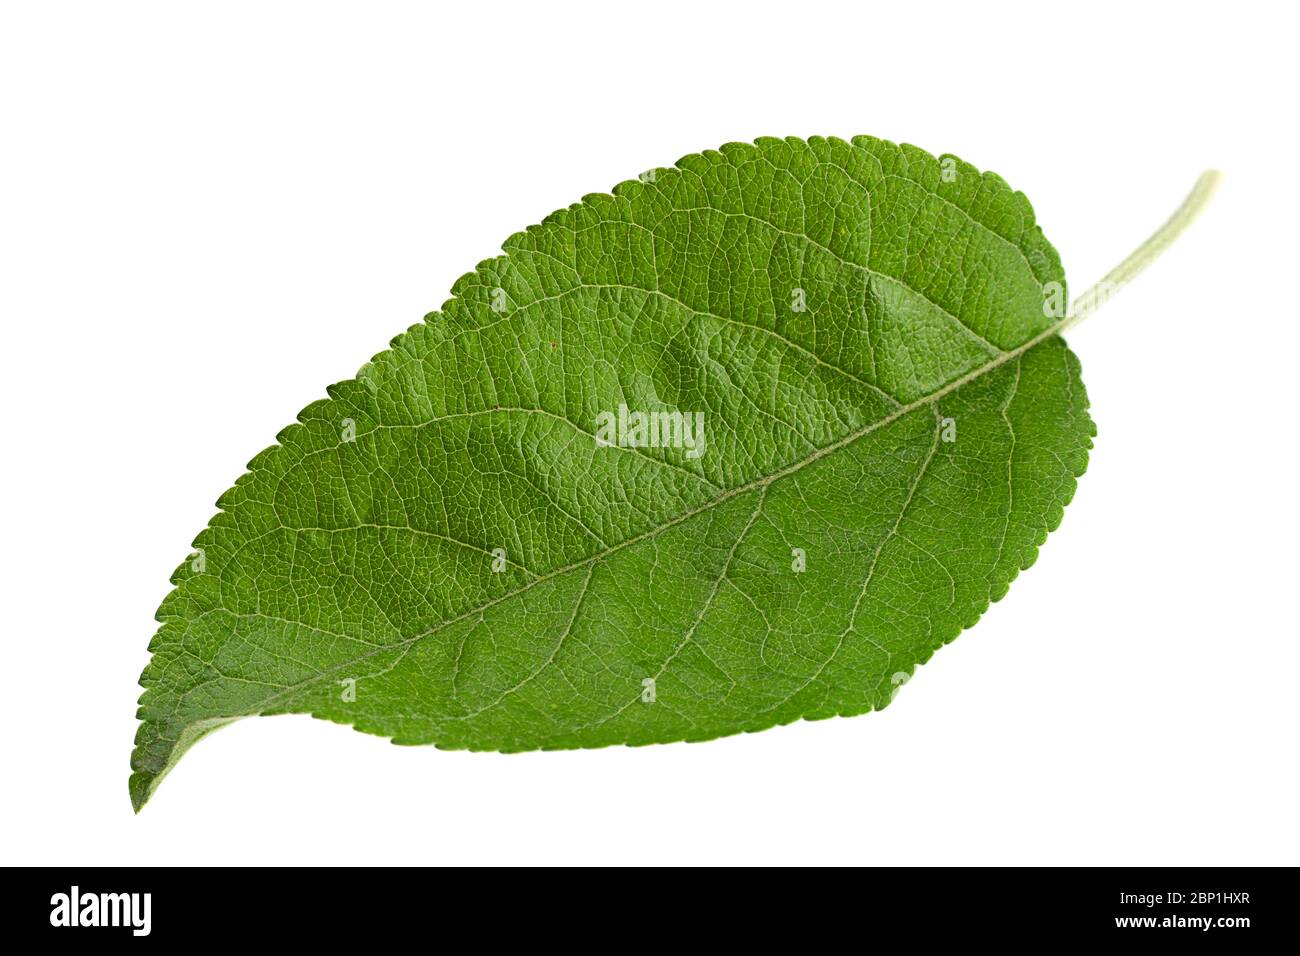 Apple leaf isolated on white background Stock Photo